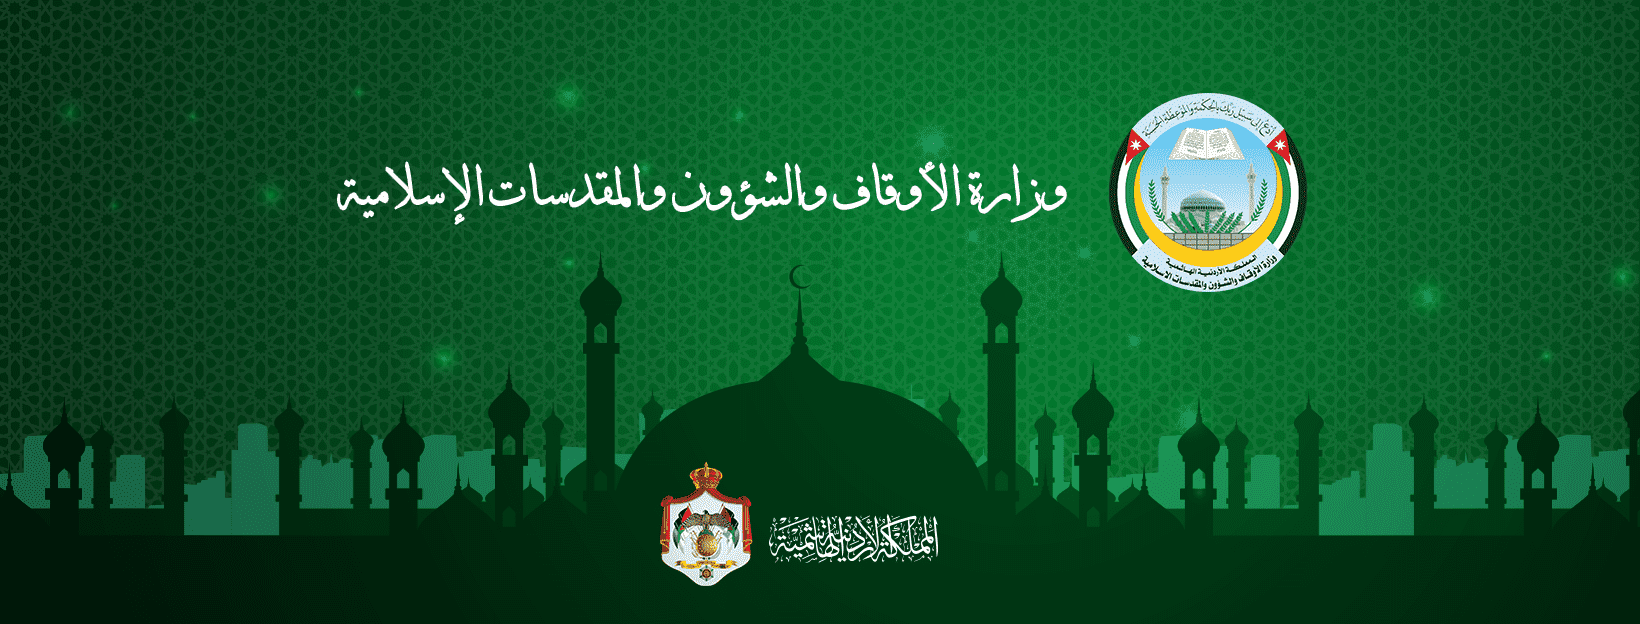 شعار وزارة الأوقاف والشؤون والمقدسات الإسلامية. حساب الوزارة على فيسبوك